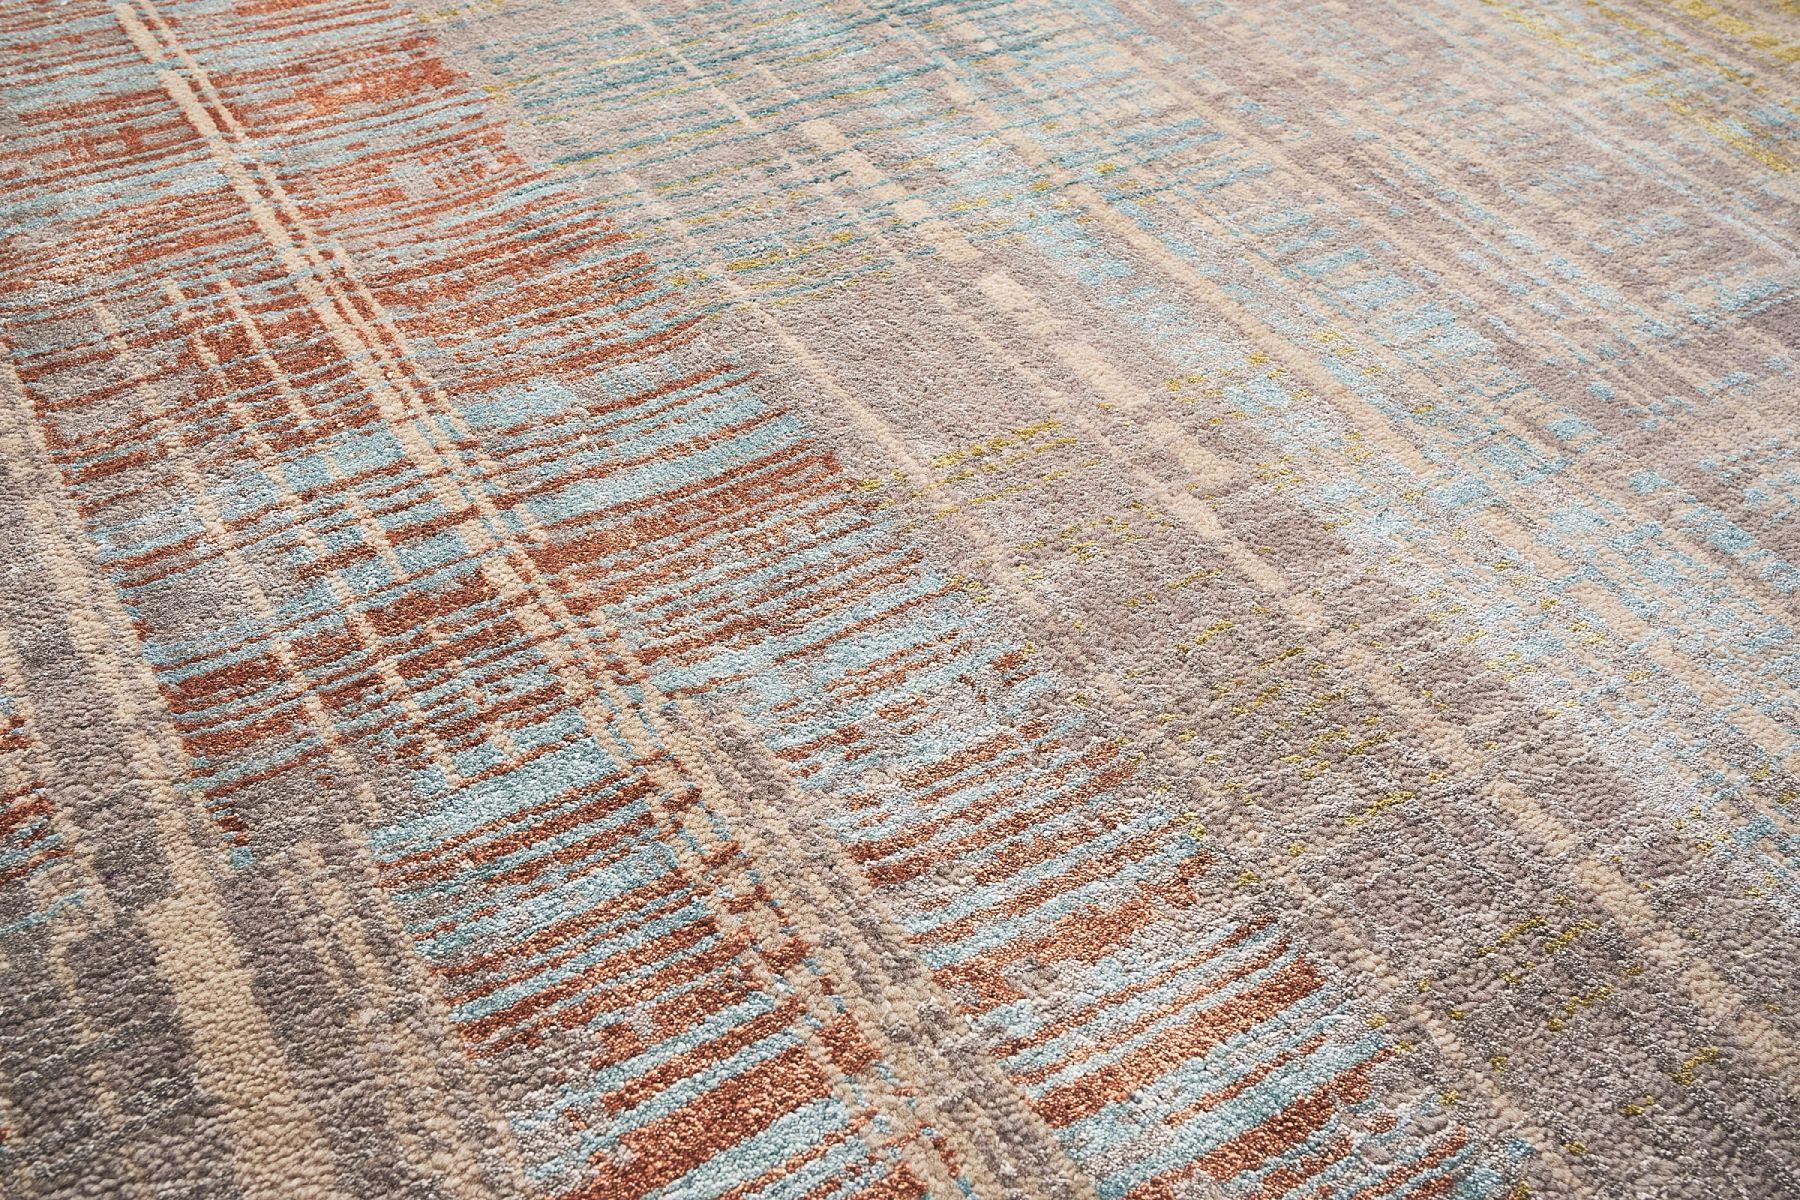 Ein schöner, farbenfroher Teppich aus dem Intersections-Muster, hergestellt in den 2000er Jahren. Der Teppich ist aus wunderschön sichtbarer handgeknüpfter Wolle und Seide gefertigt. Was diesen Teppich so einzigartig macht, ist die Verflechtung der